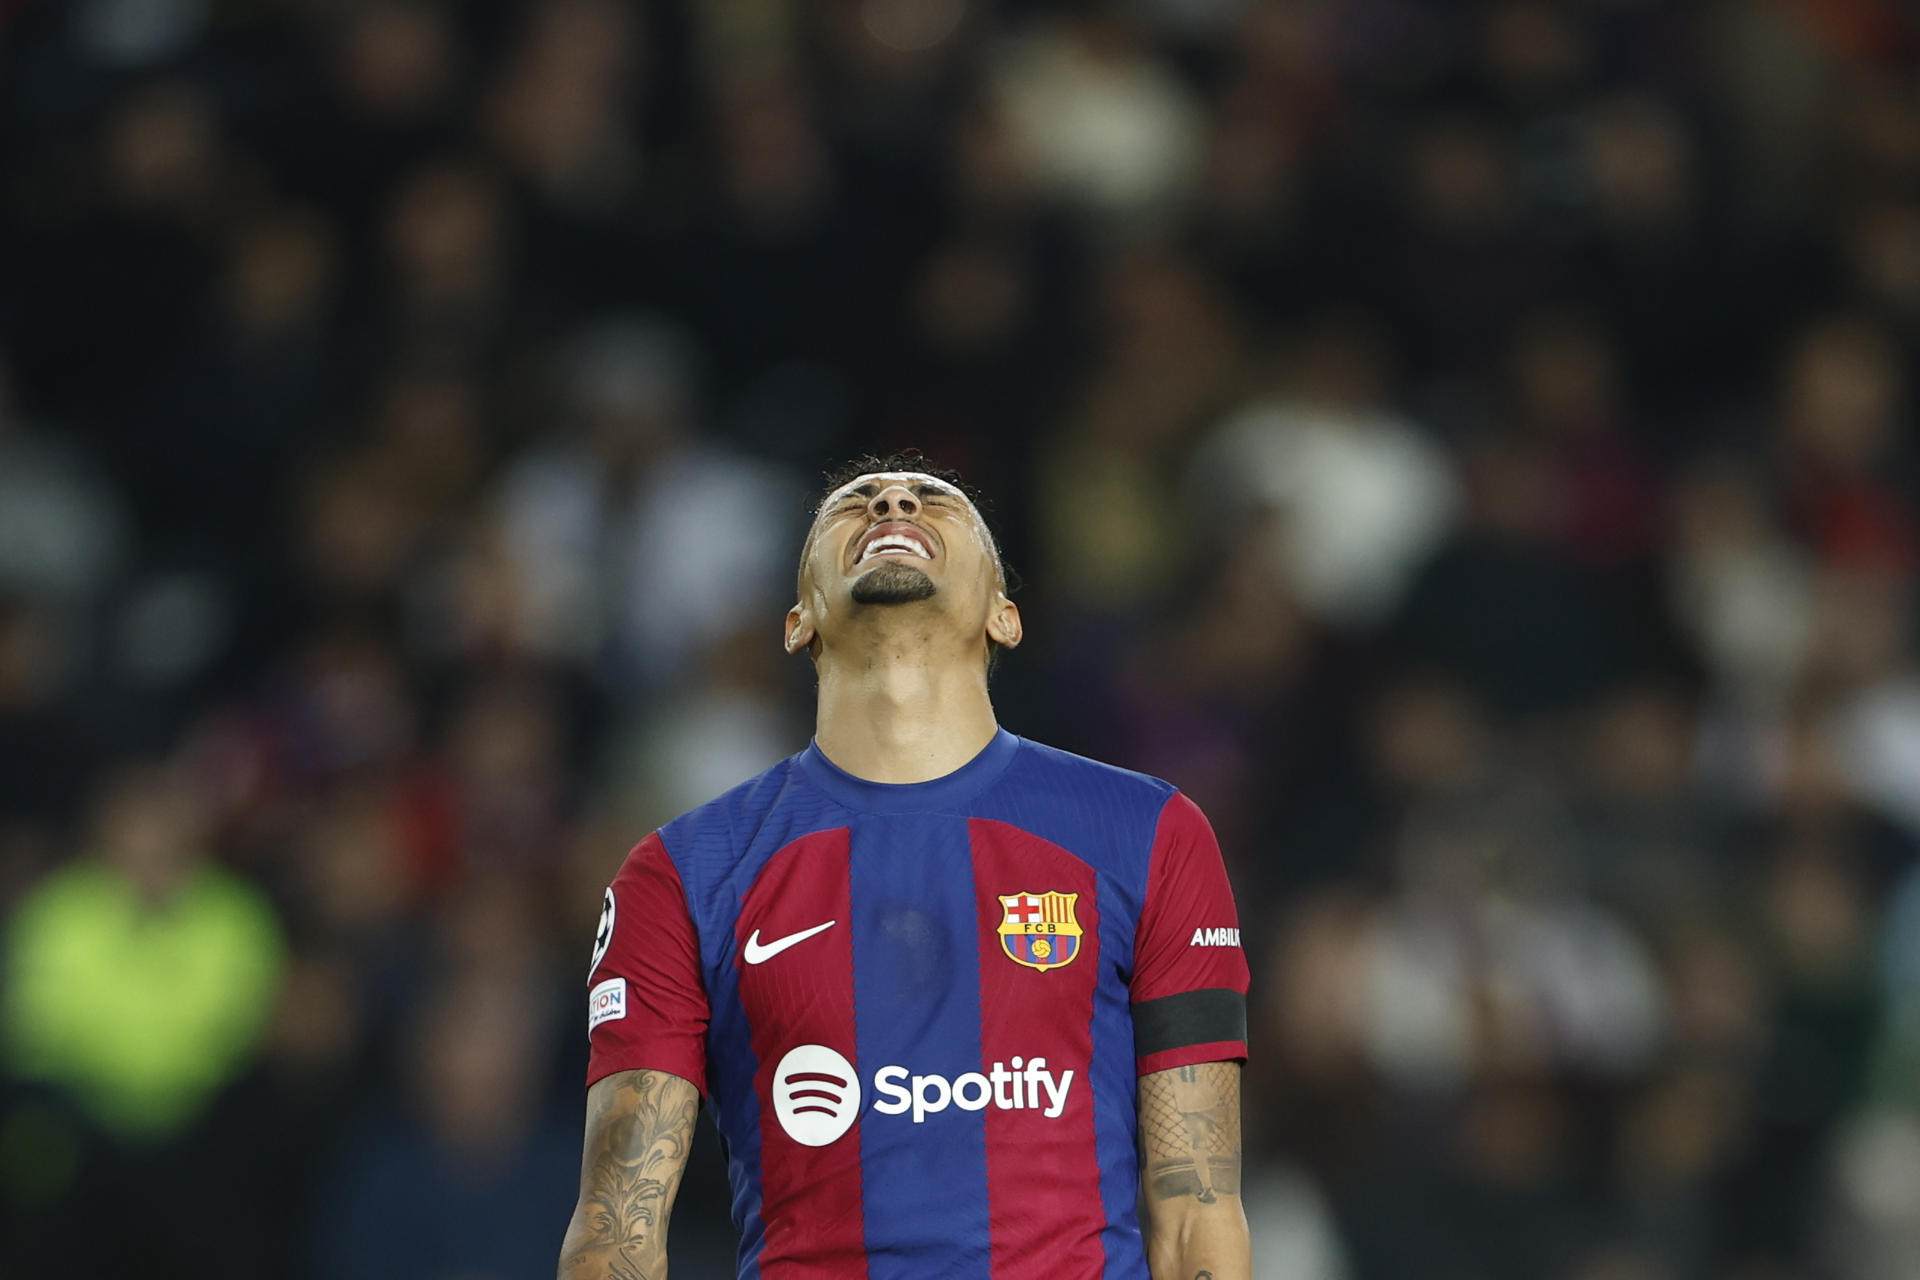 "Jugando así el City de Pep Guardiola nos mete 5", el Barça deja dudas en la Champions